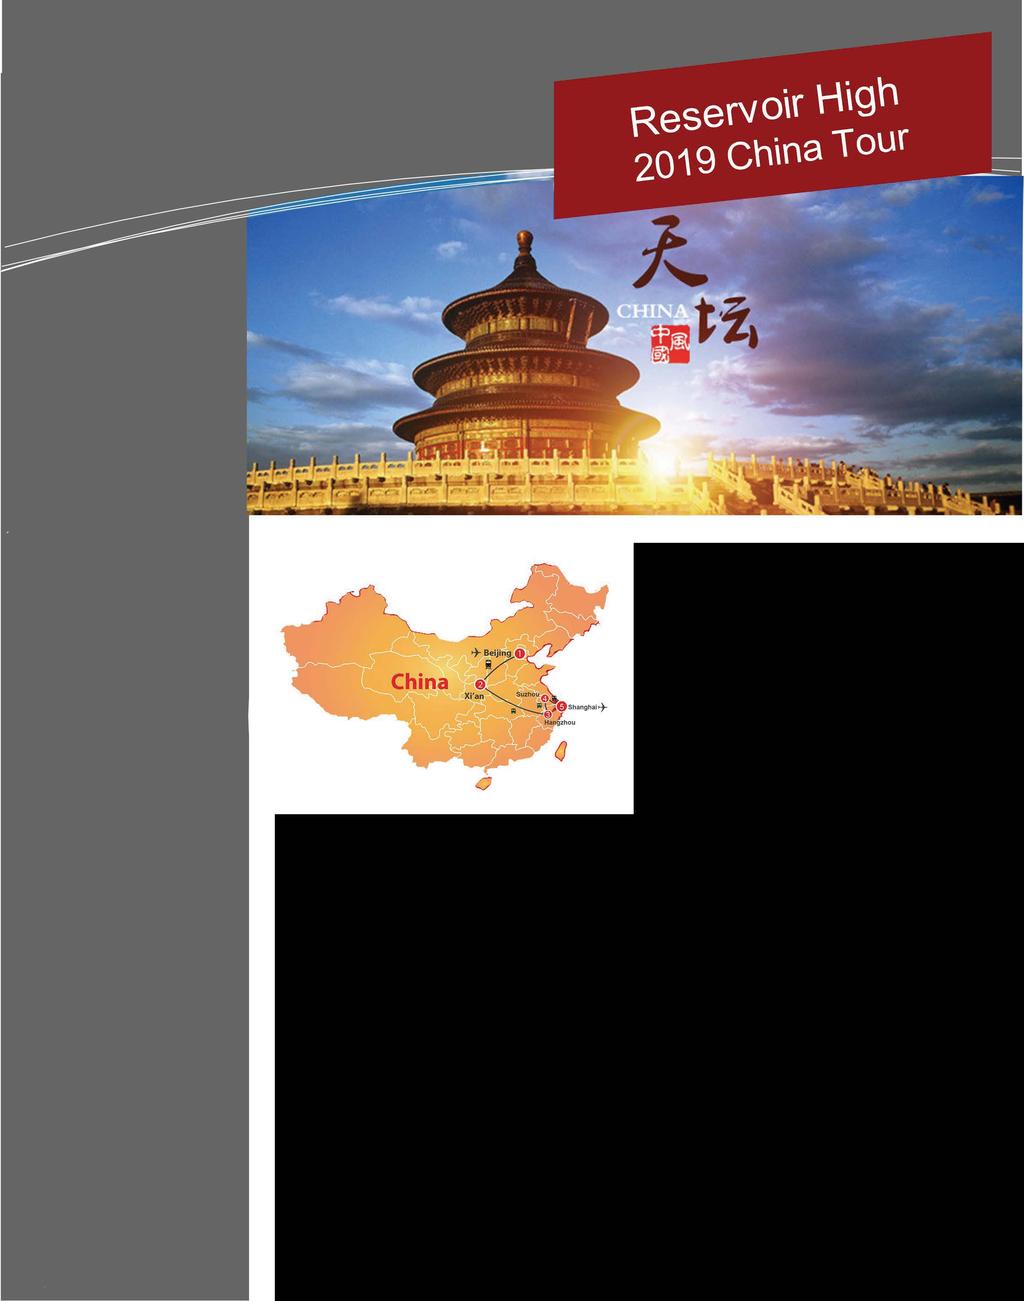 Reservoir High 2019 China Tour Departure: 30/03/2019 Return: 13/04/2019 Tour Route: Beijing, TianJin, Xi'an, Hangzhou, Suzhou,